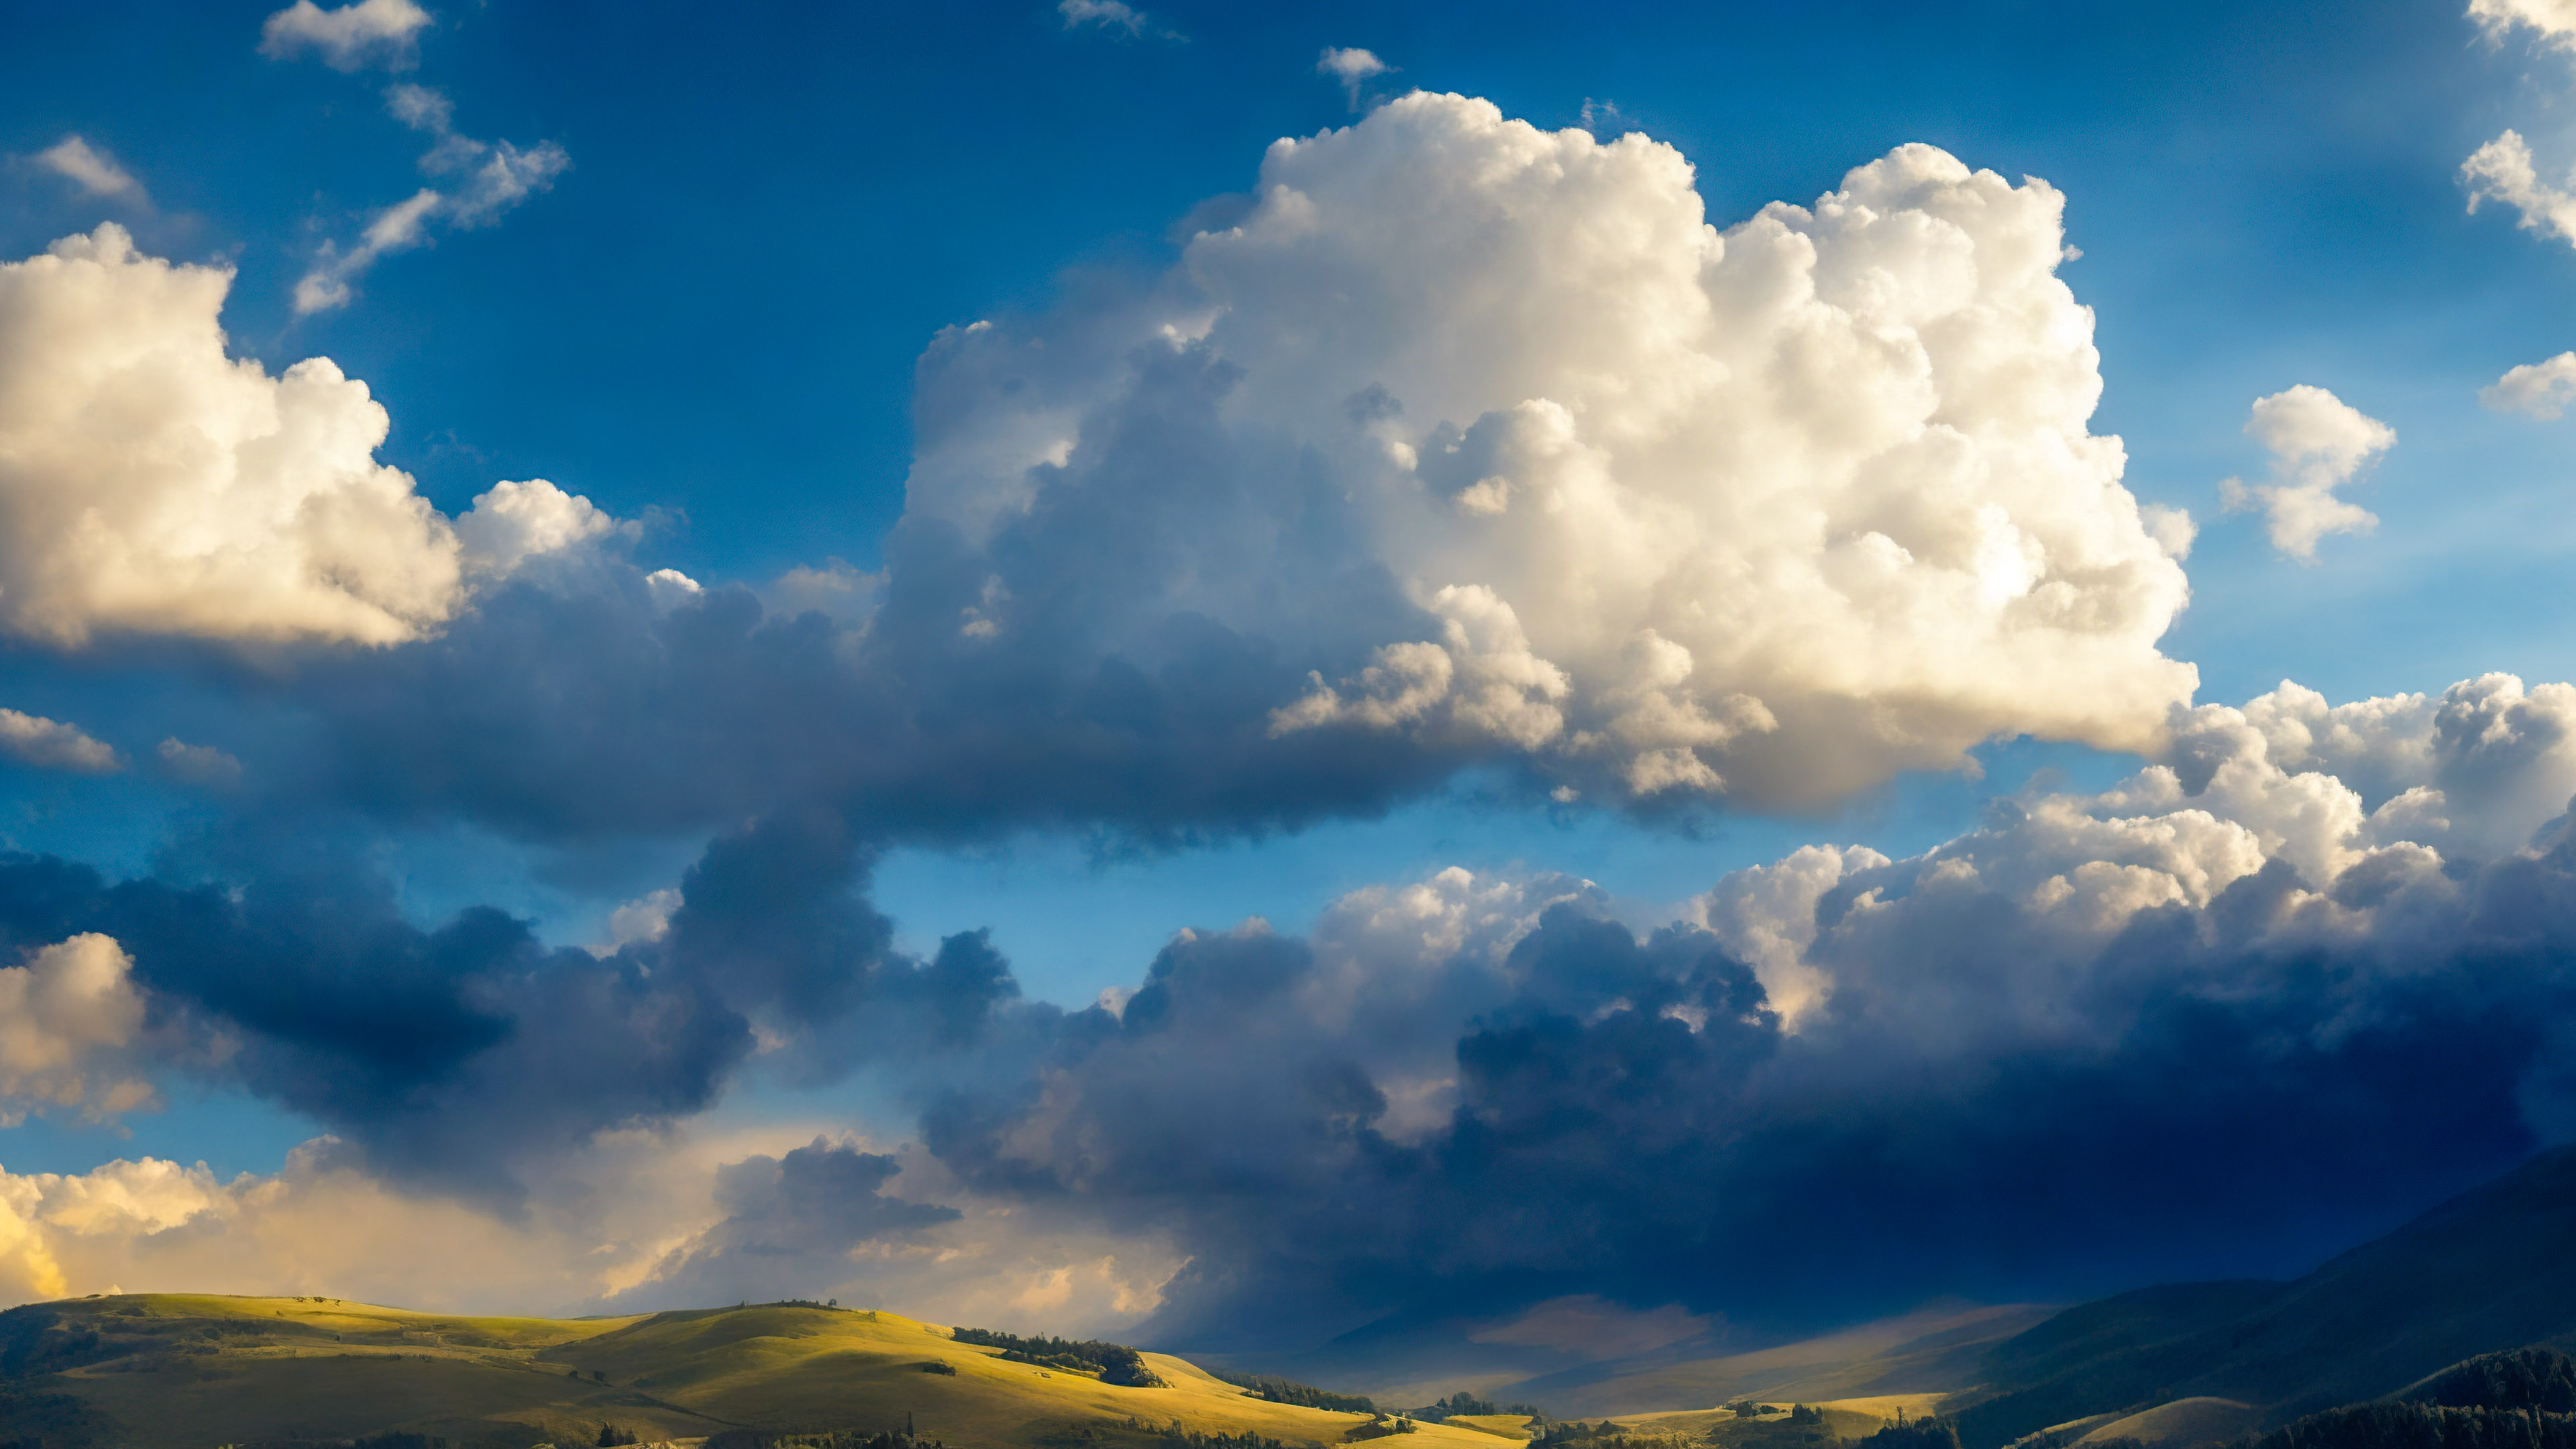 Goûtez au dramatique avec notre fond cool, présentant un ciel dramatique rempli de nuages cumulonimbus imposants projetant des ombres sur une vallée ensoleillée.